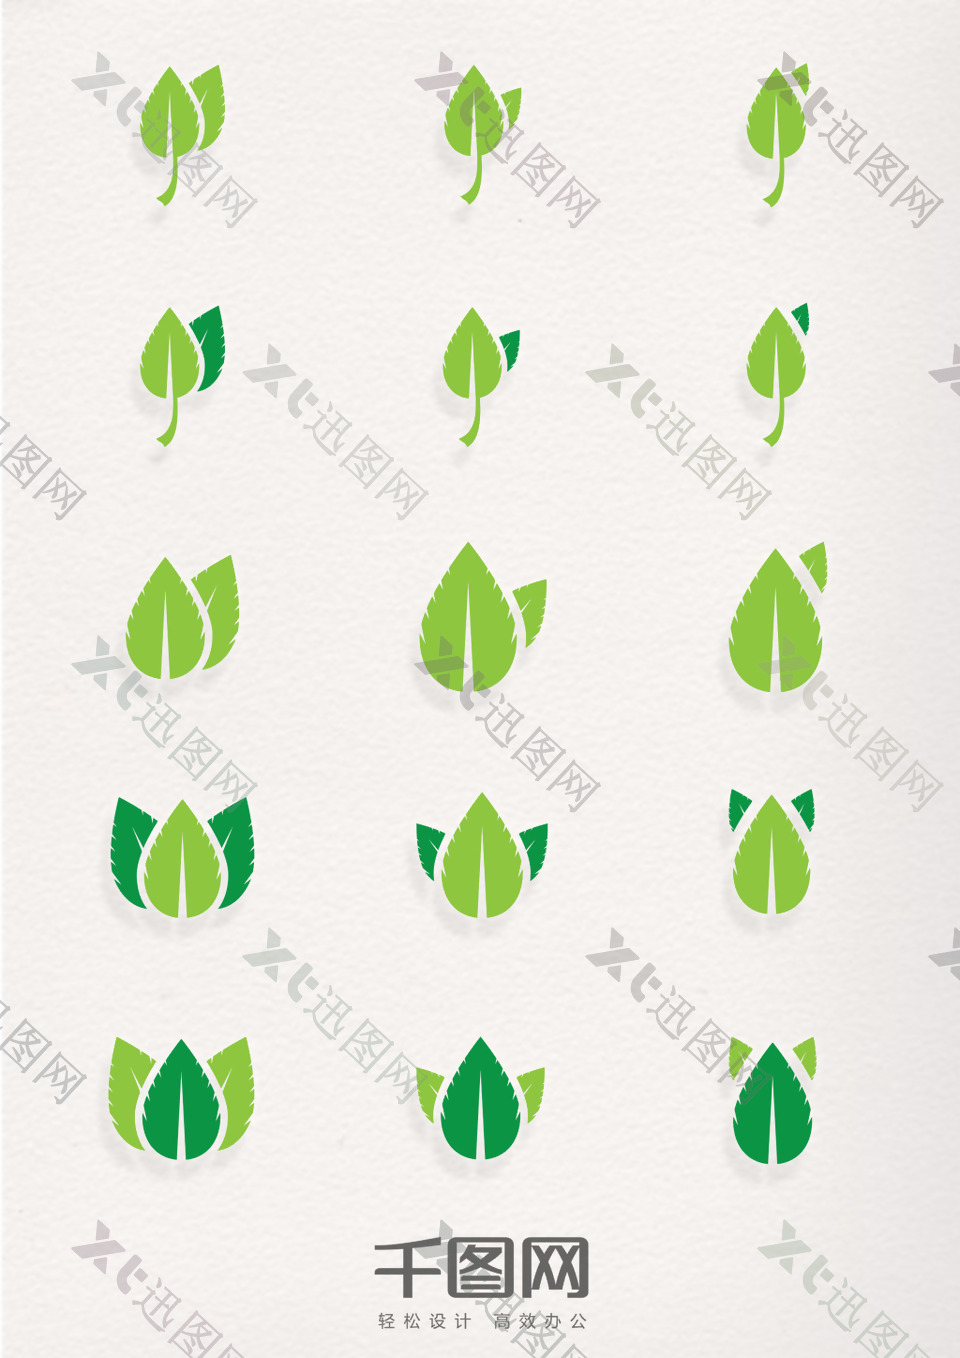 多种绿色树叶造型图标元素